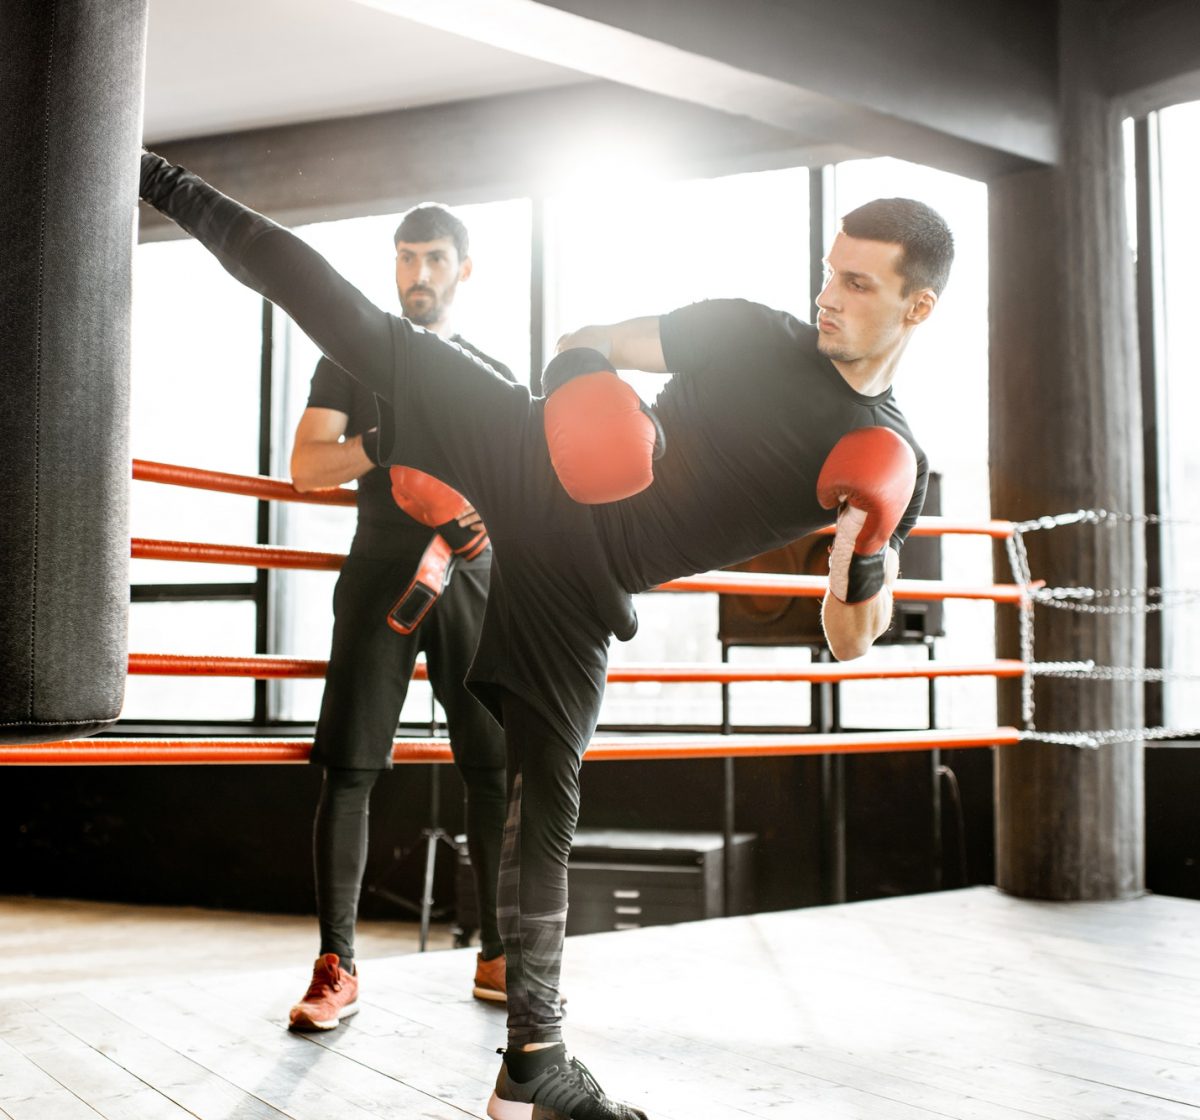 kickboxer-training-with-punching-bag.jpg